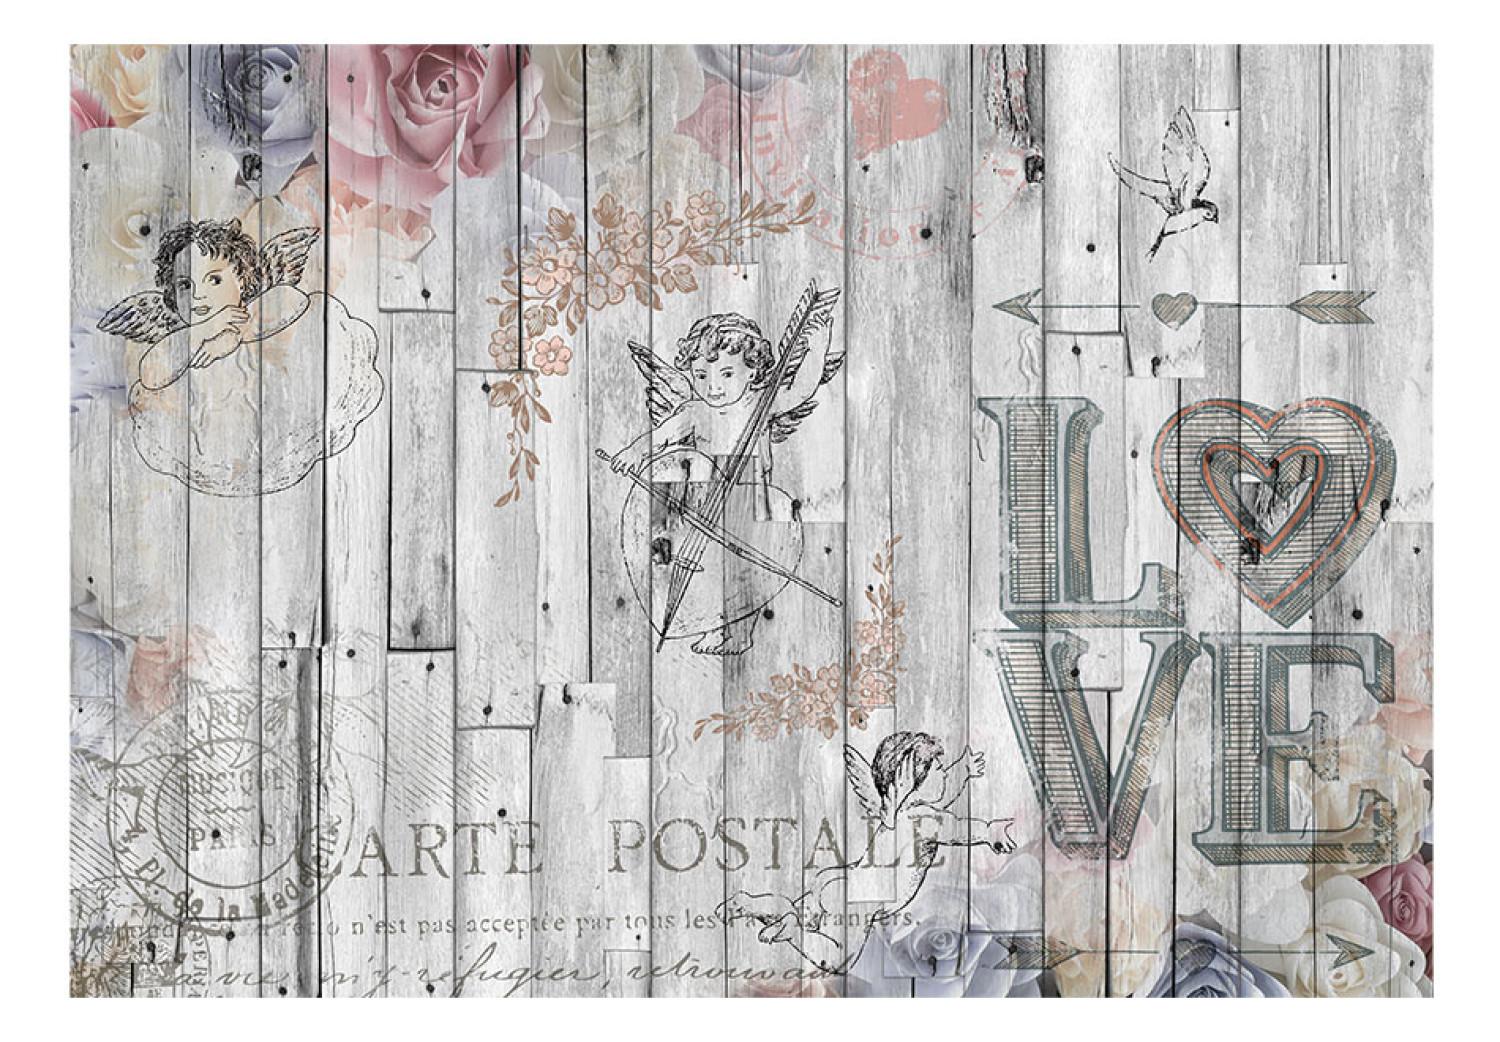 Fotomural decorativo Postal - composición con ángeles y flores en fondo de madera